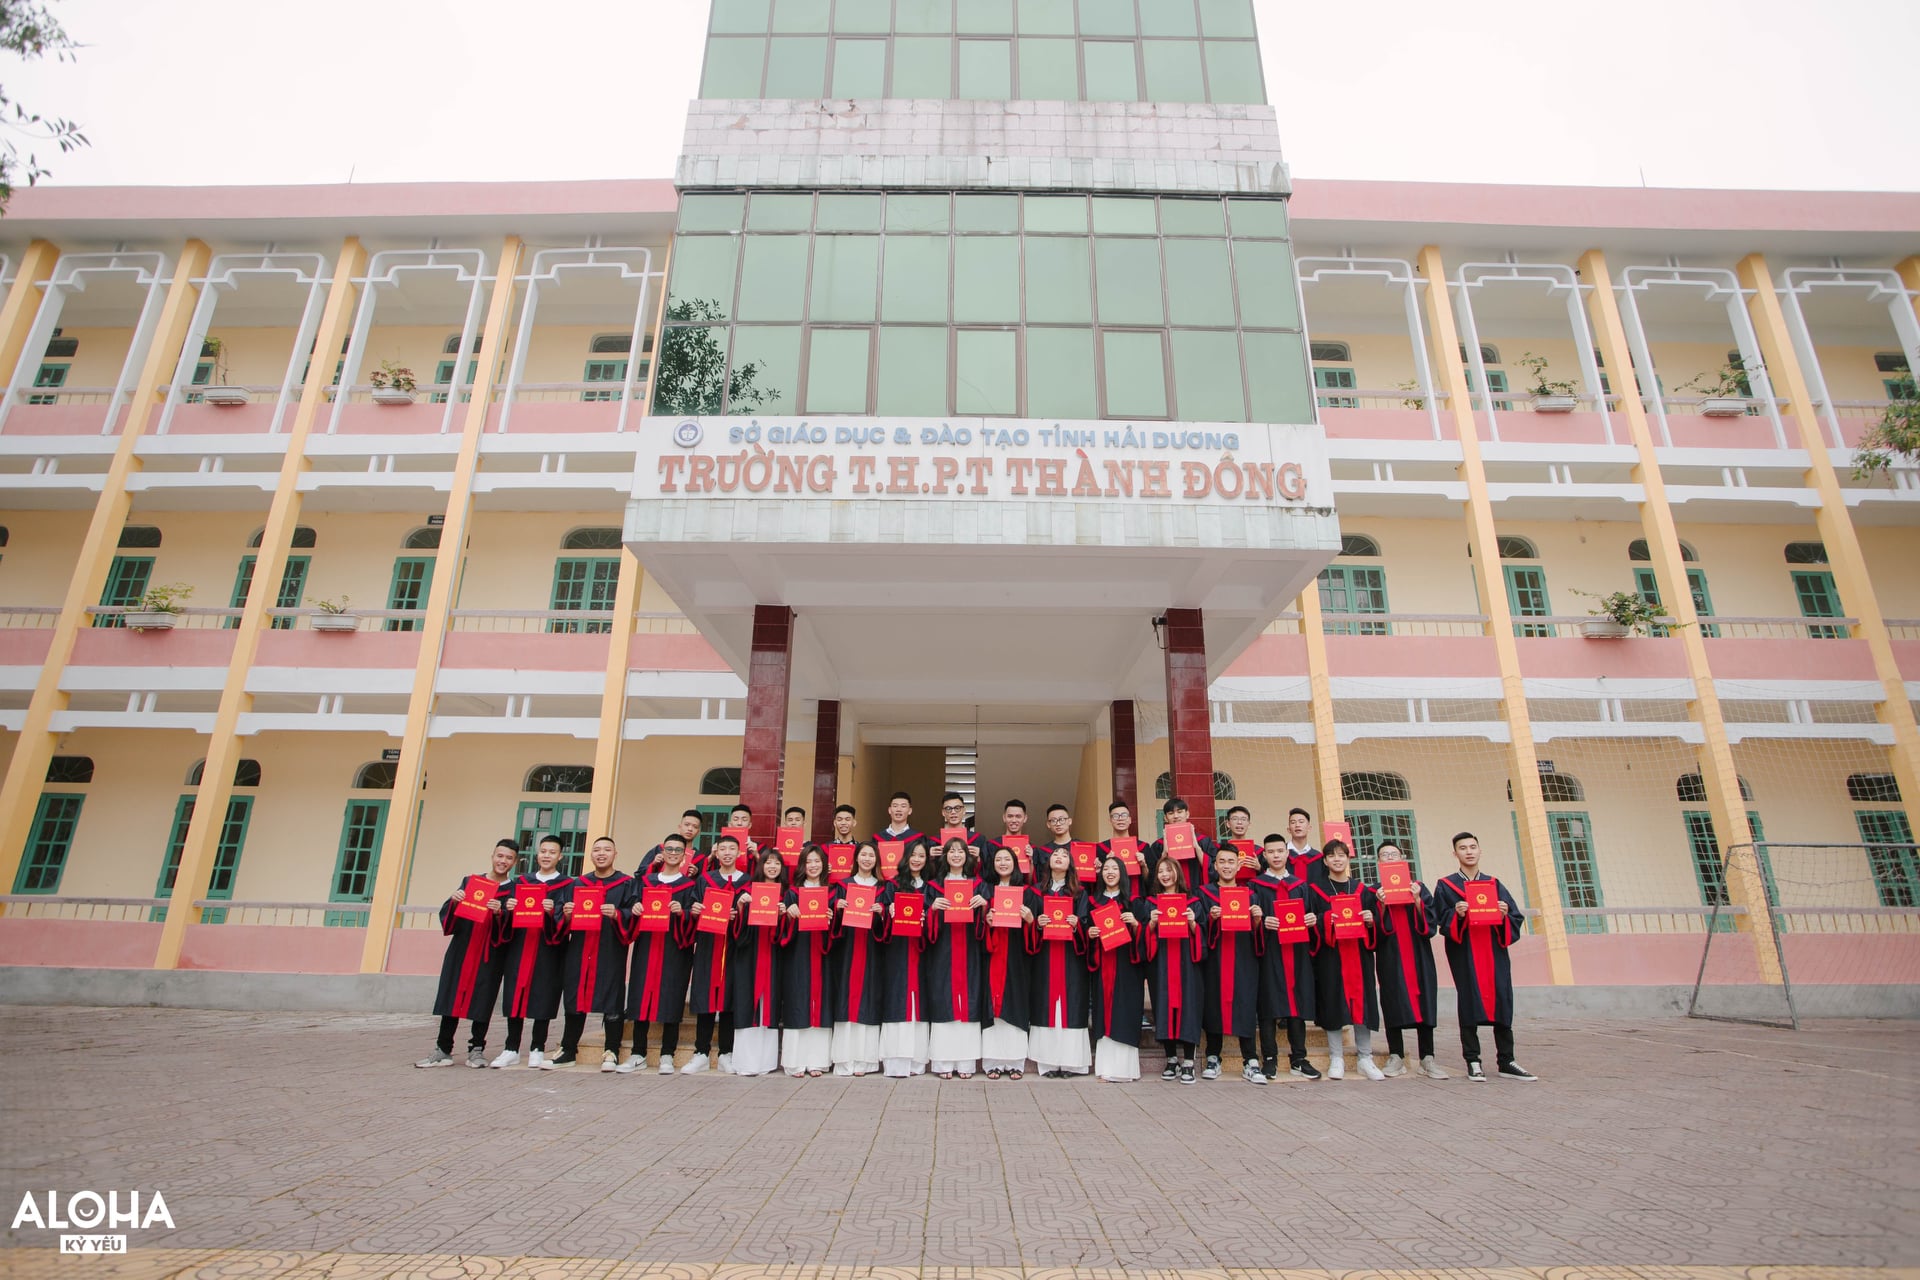 Trường THPT Thành Đông ảnh 1